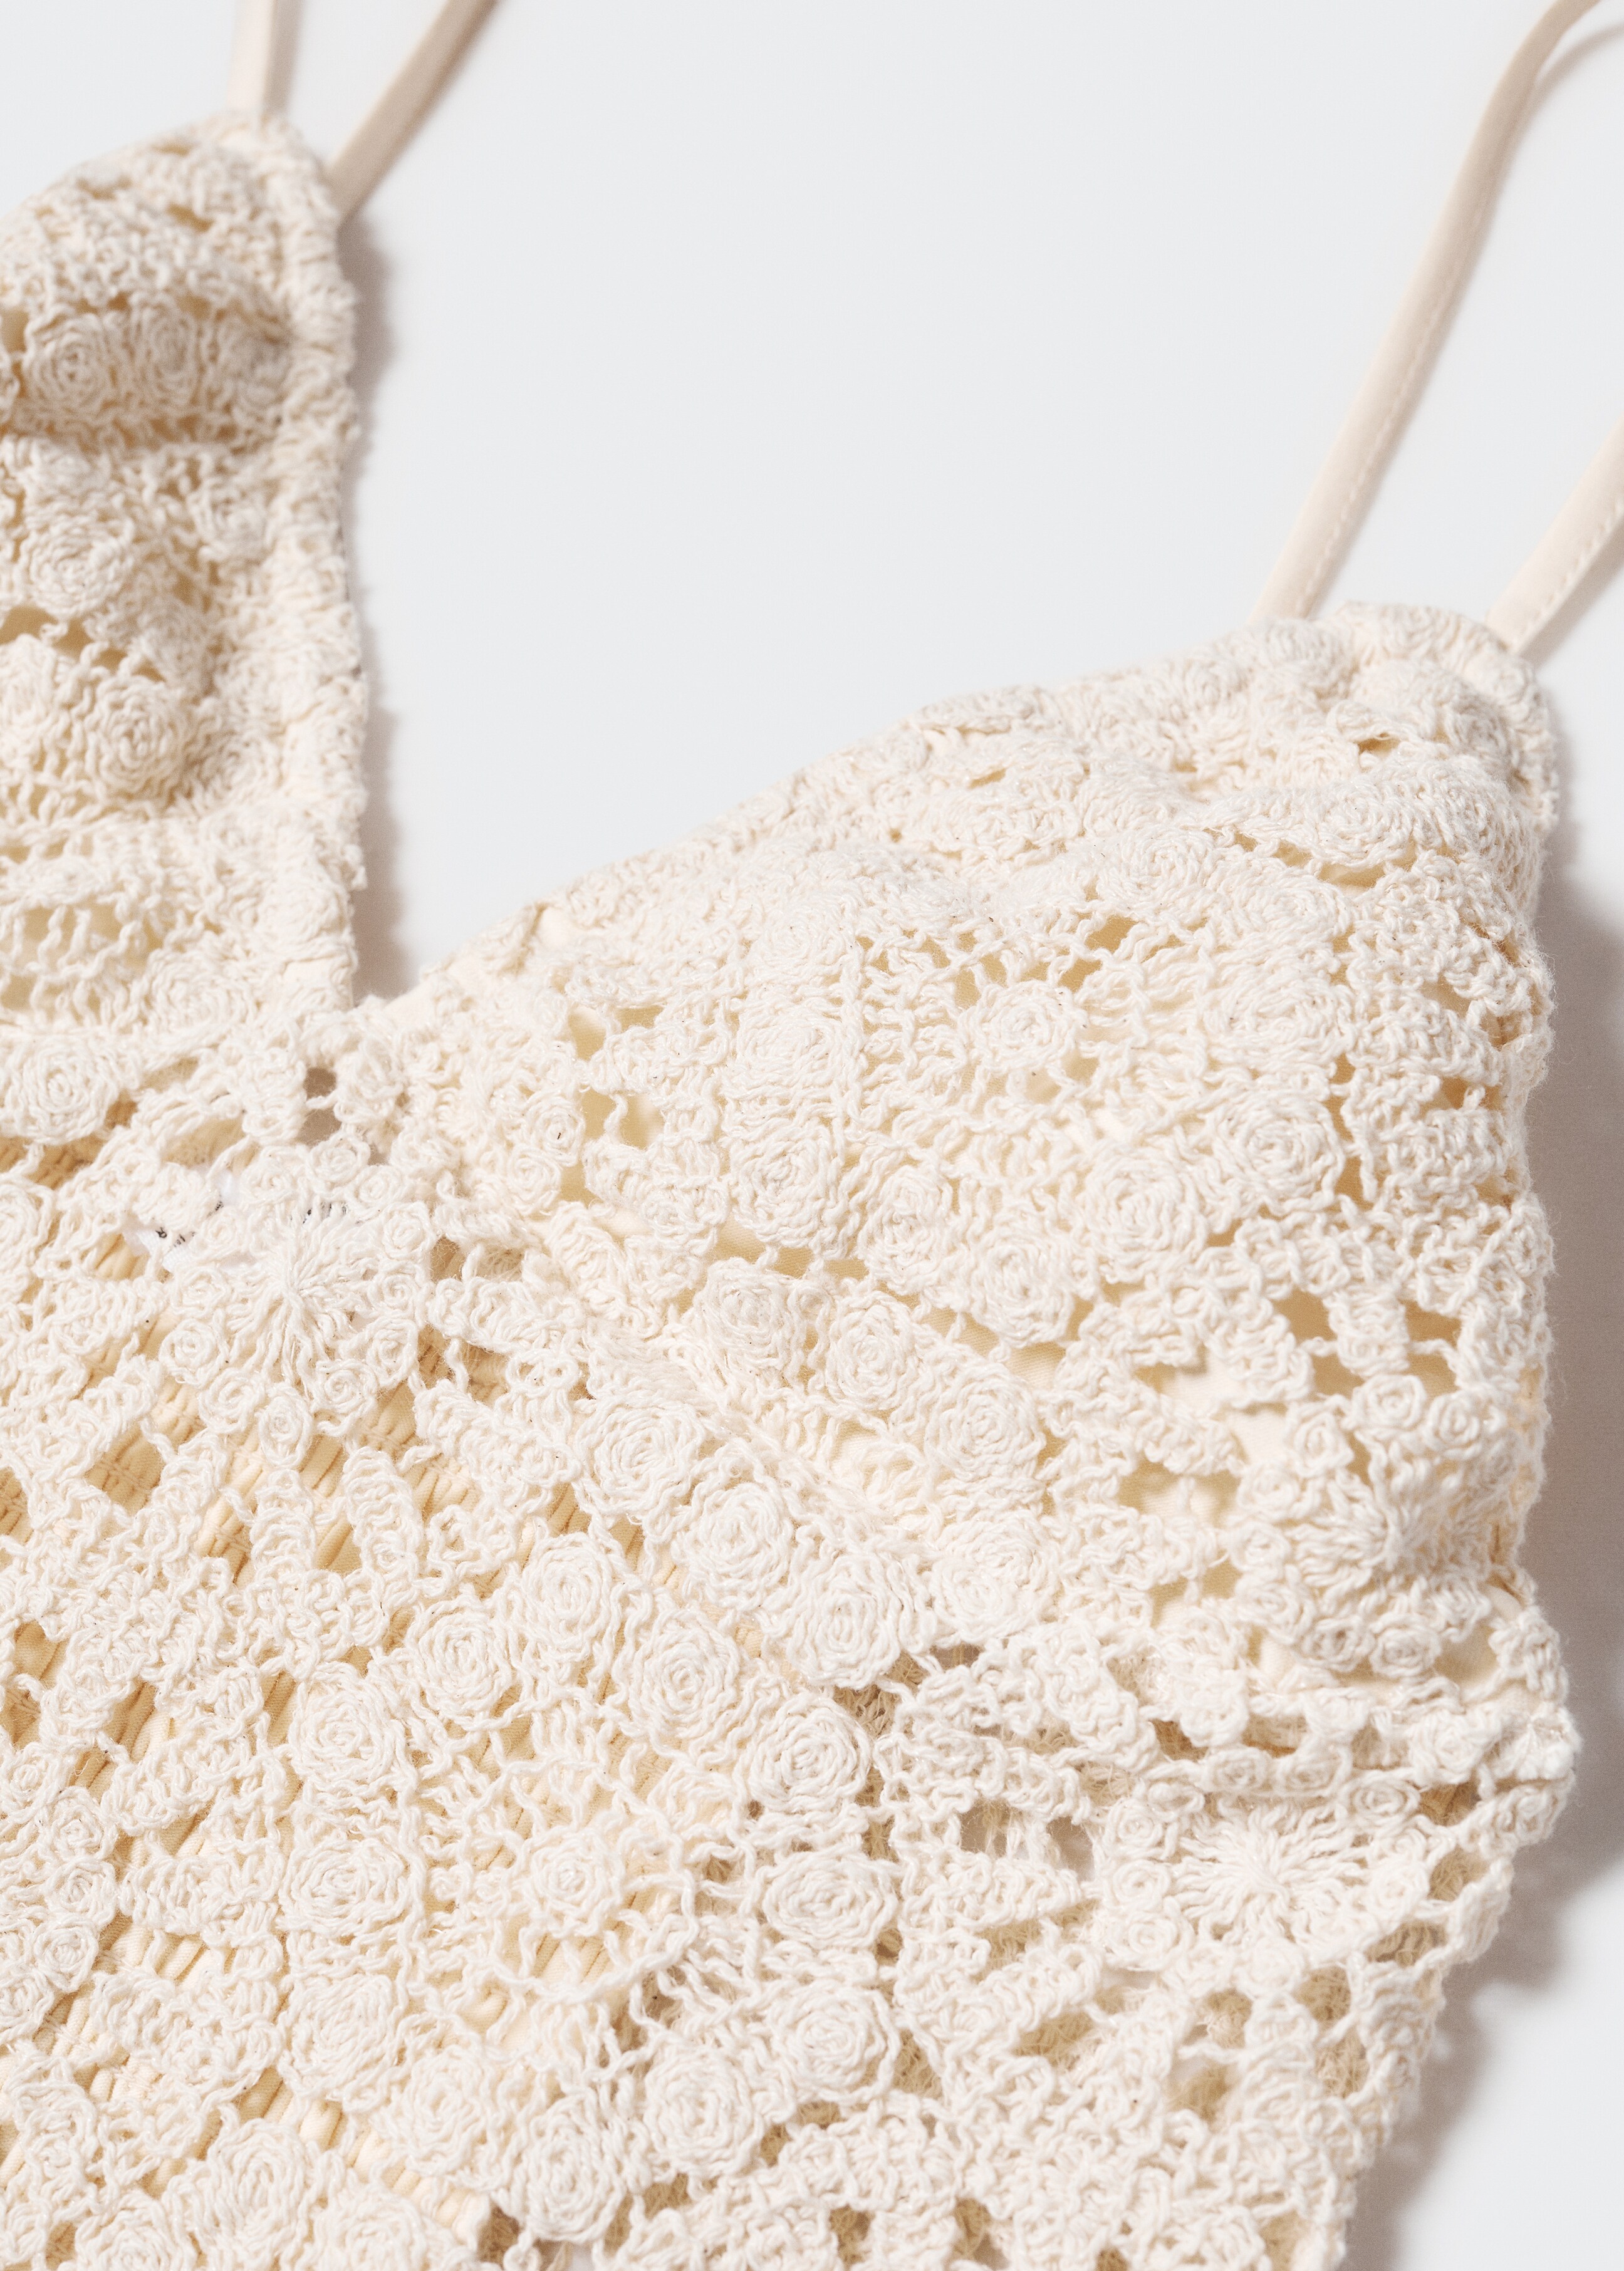 Crochet crop top - Details of the article 8